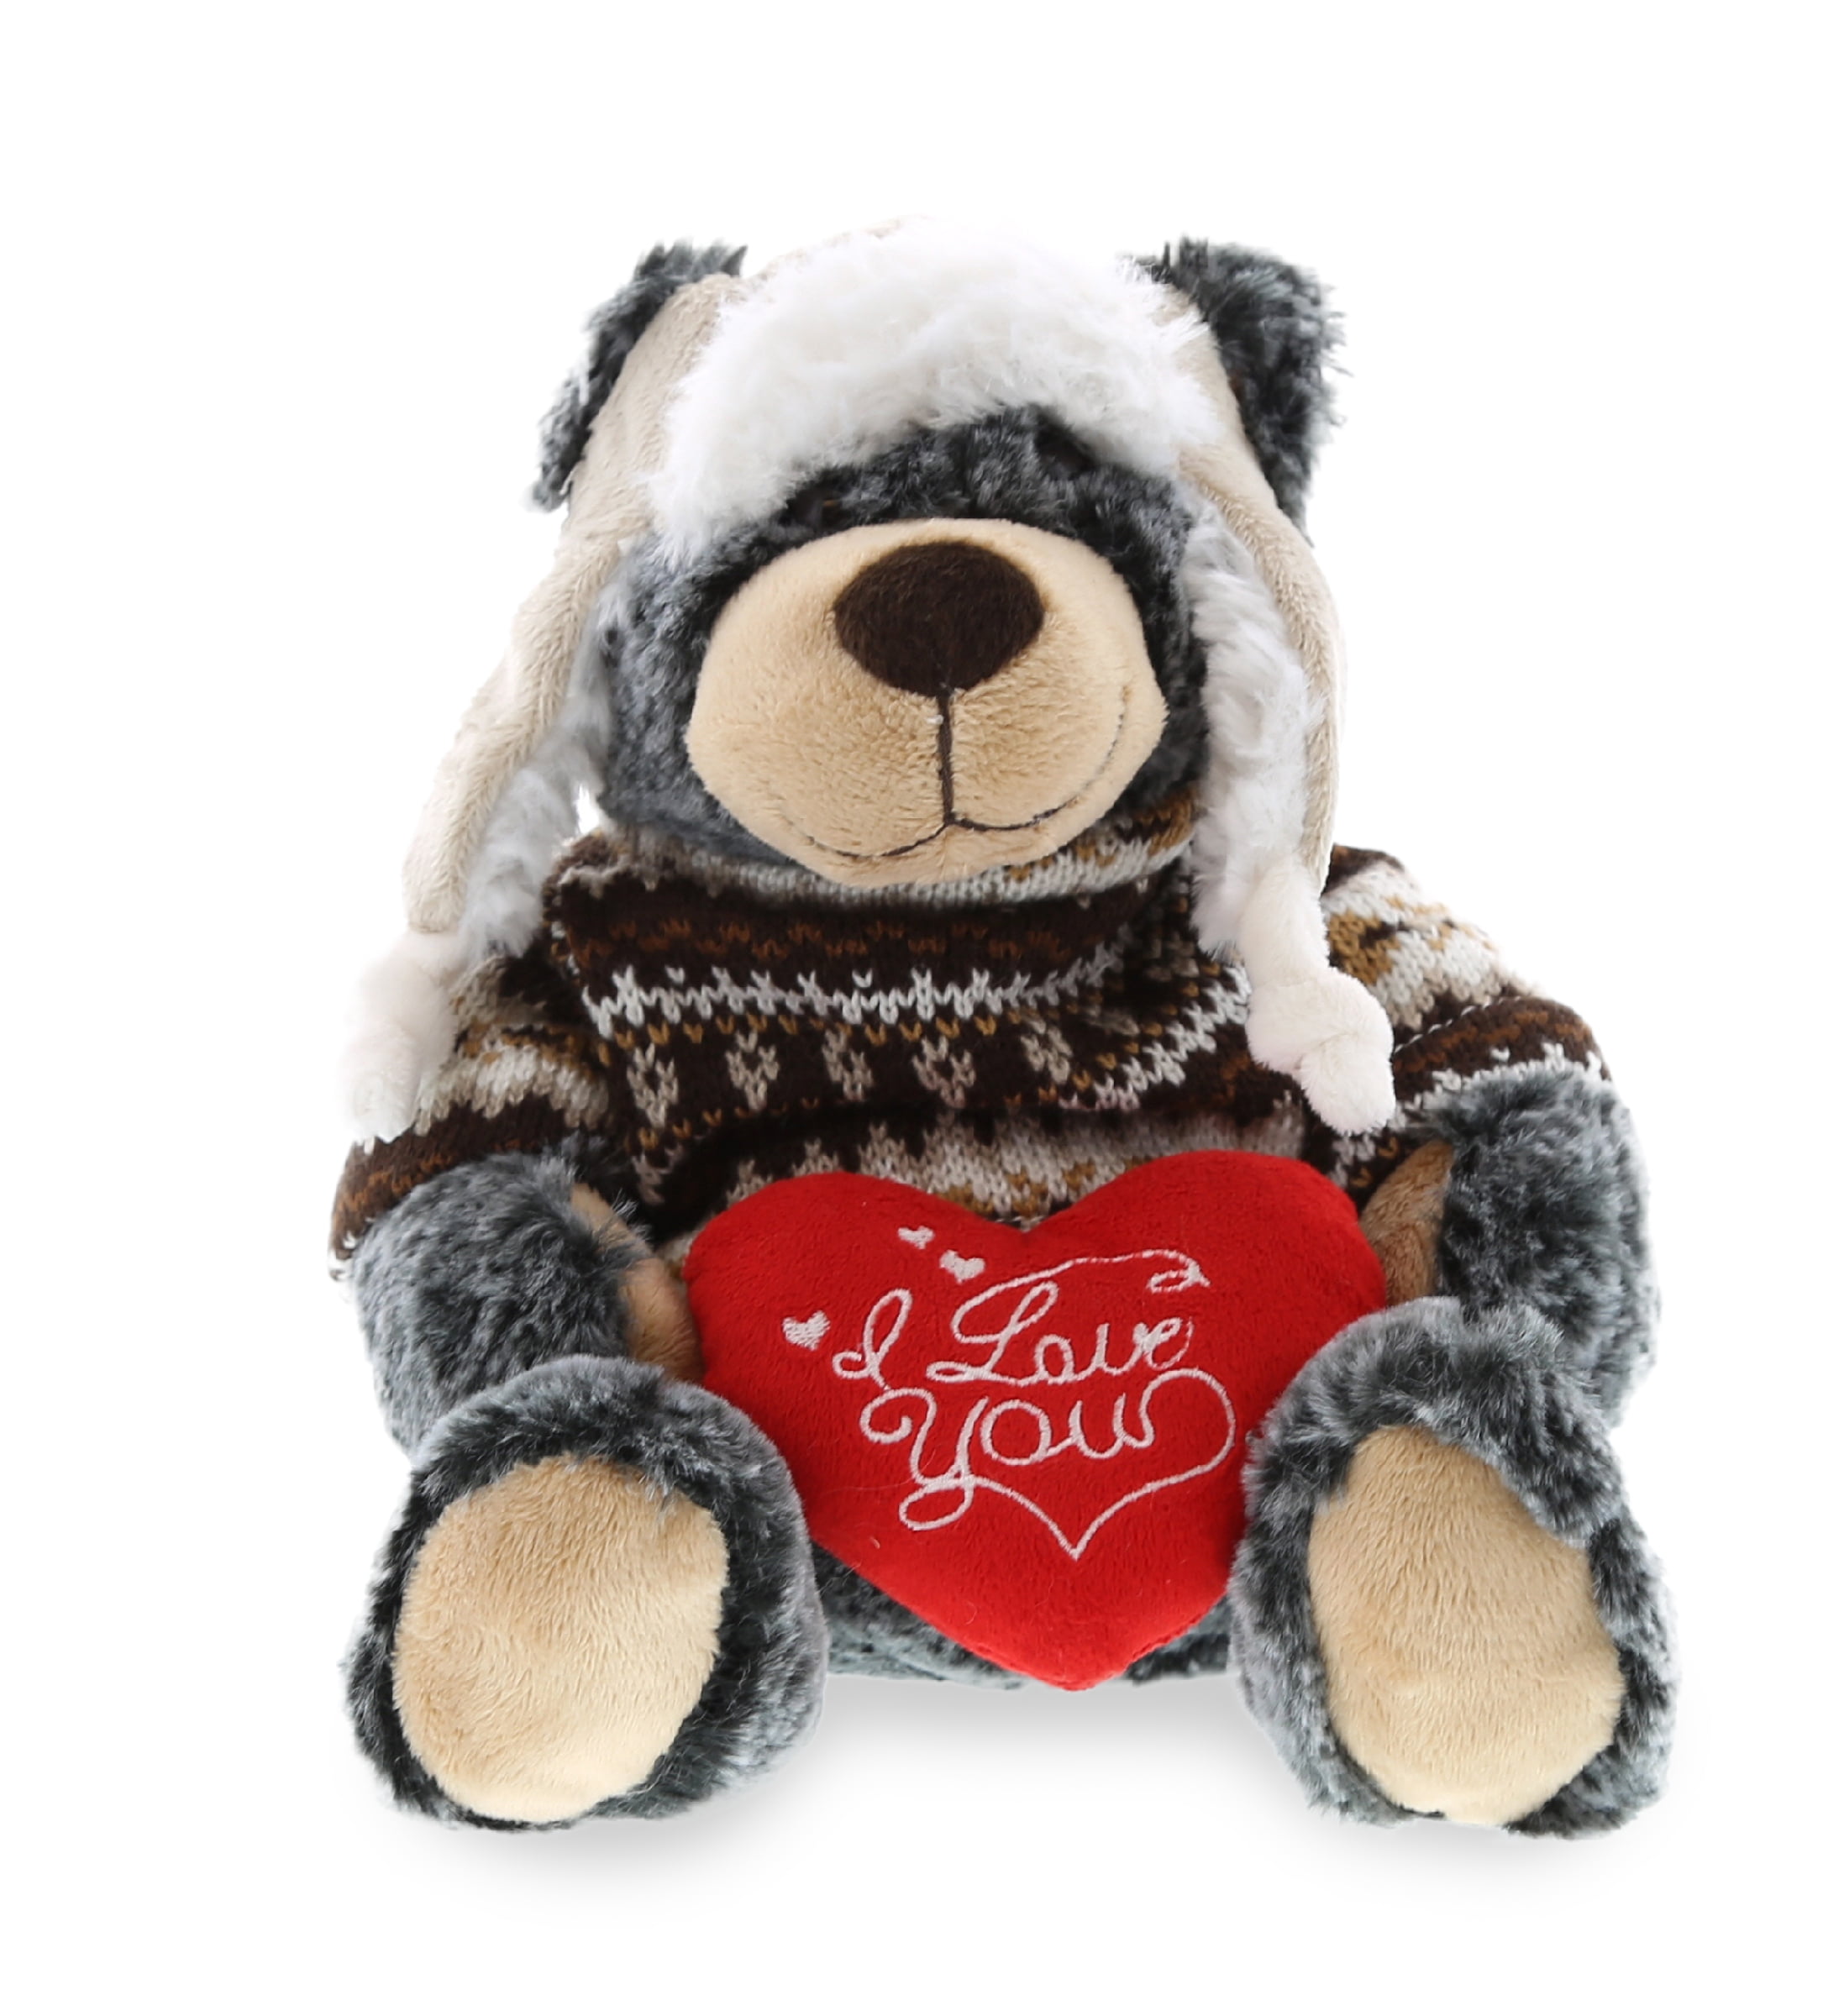 Cute Cuddly Soft Stuffed Teddy Bear w/ Message Hearts